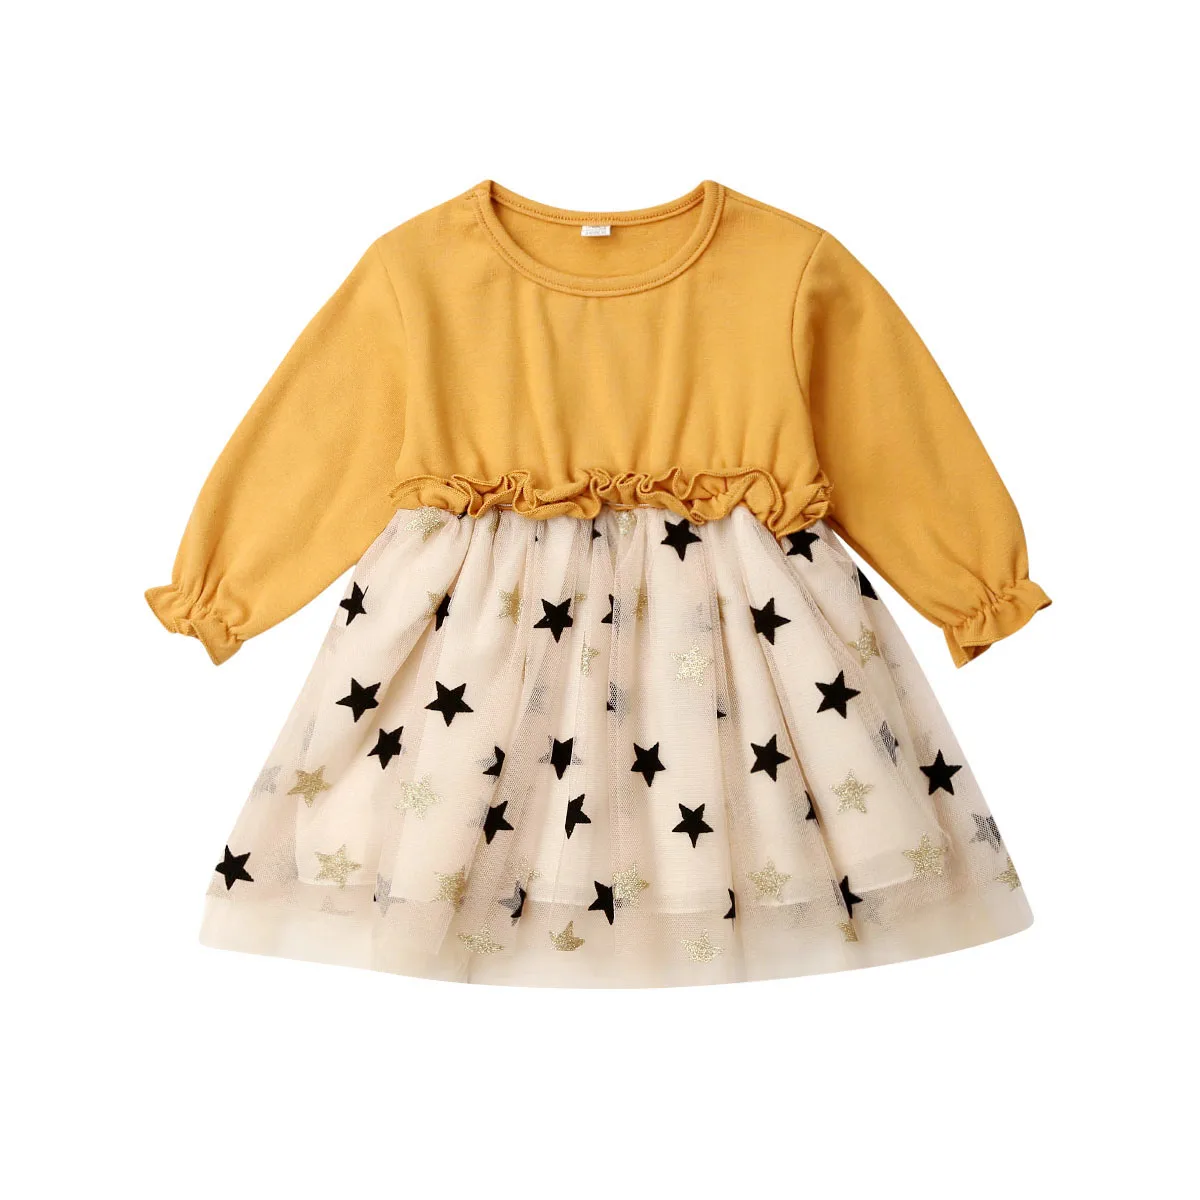 Новое платье со звездами для маленьких девочек осеннее детское платье-пачка с длинными рукавами весенняя одежда для детей от 1 до 4 лет - Цвет: Цвет: желтый